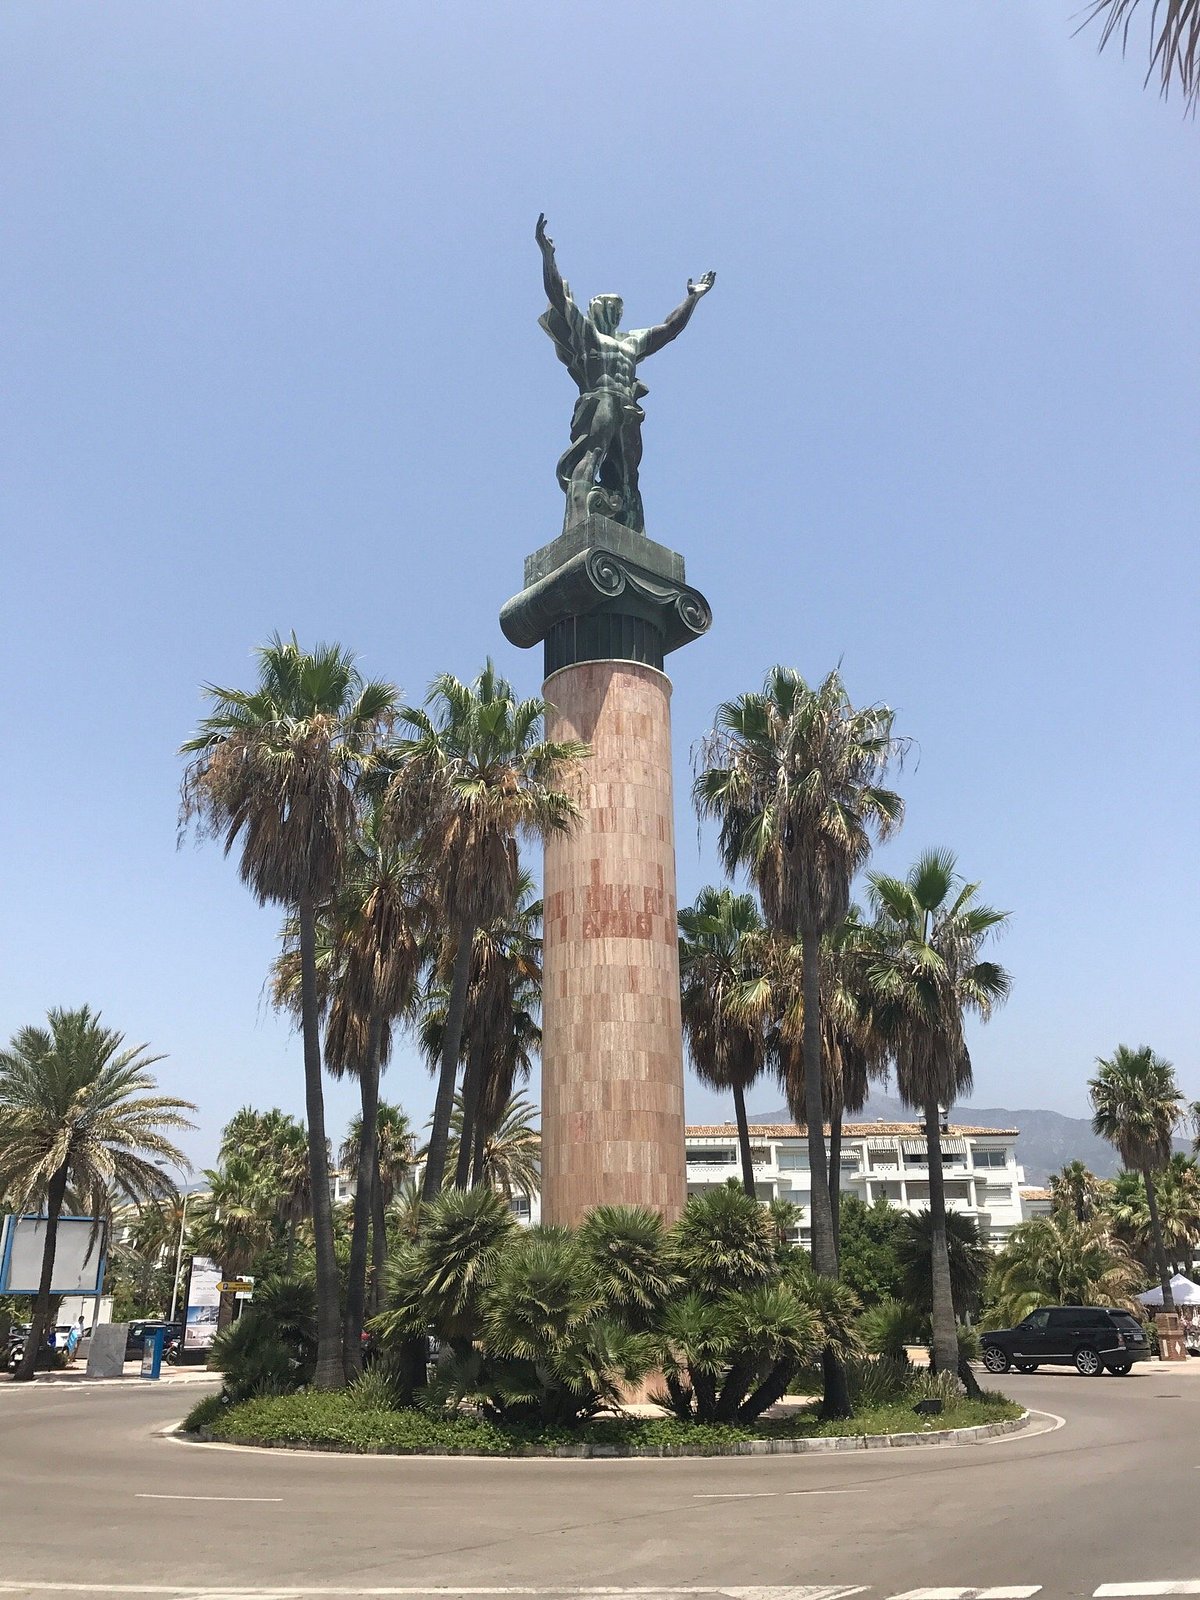 Puerto Banús, Marbella